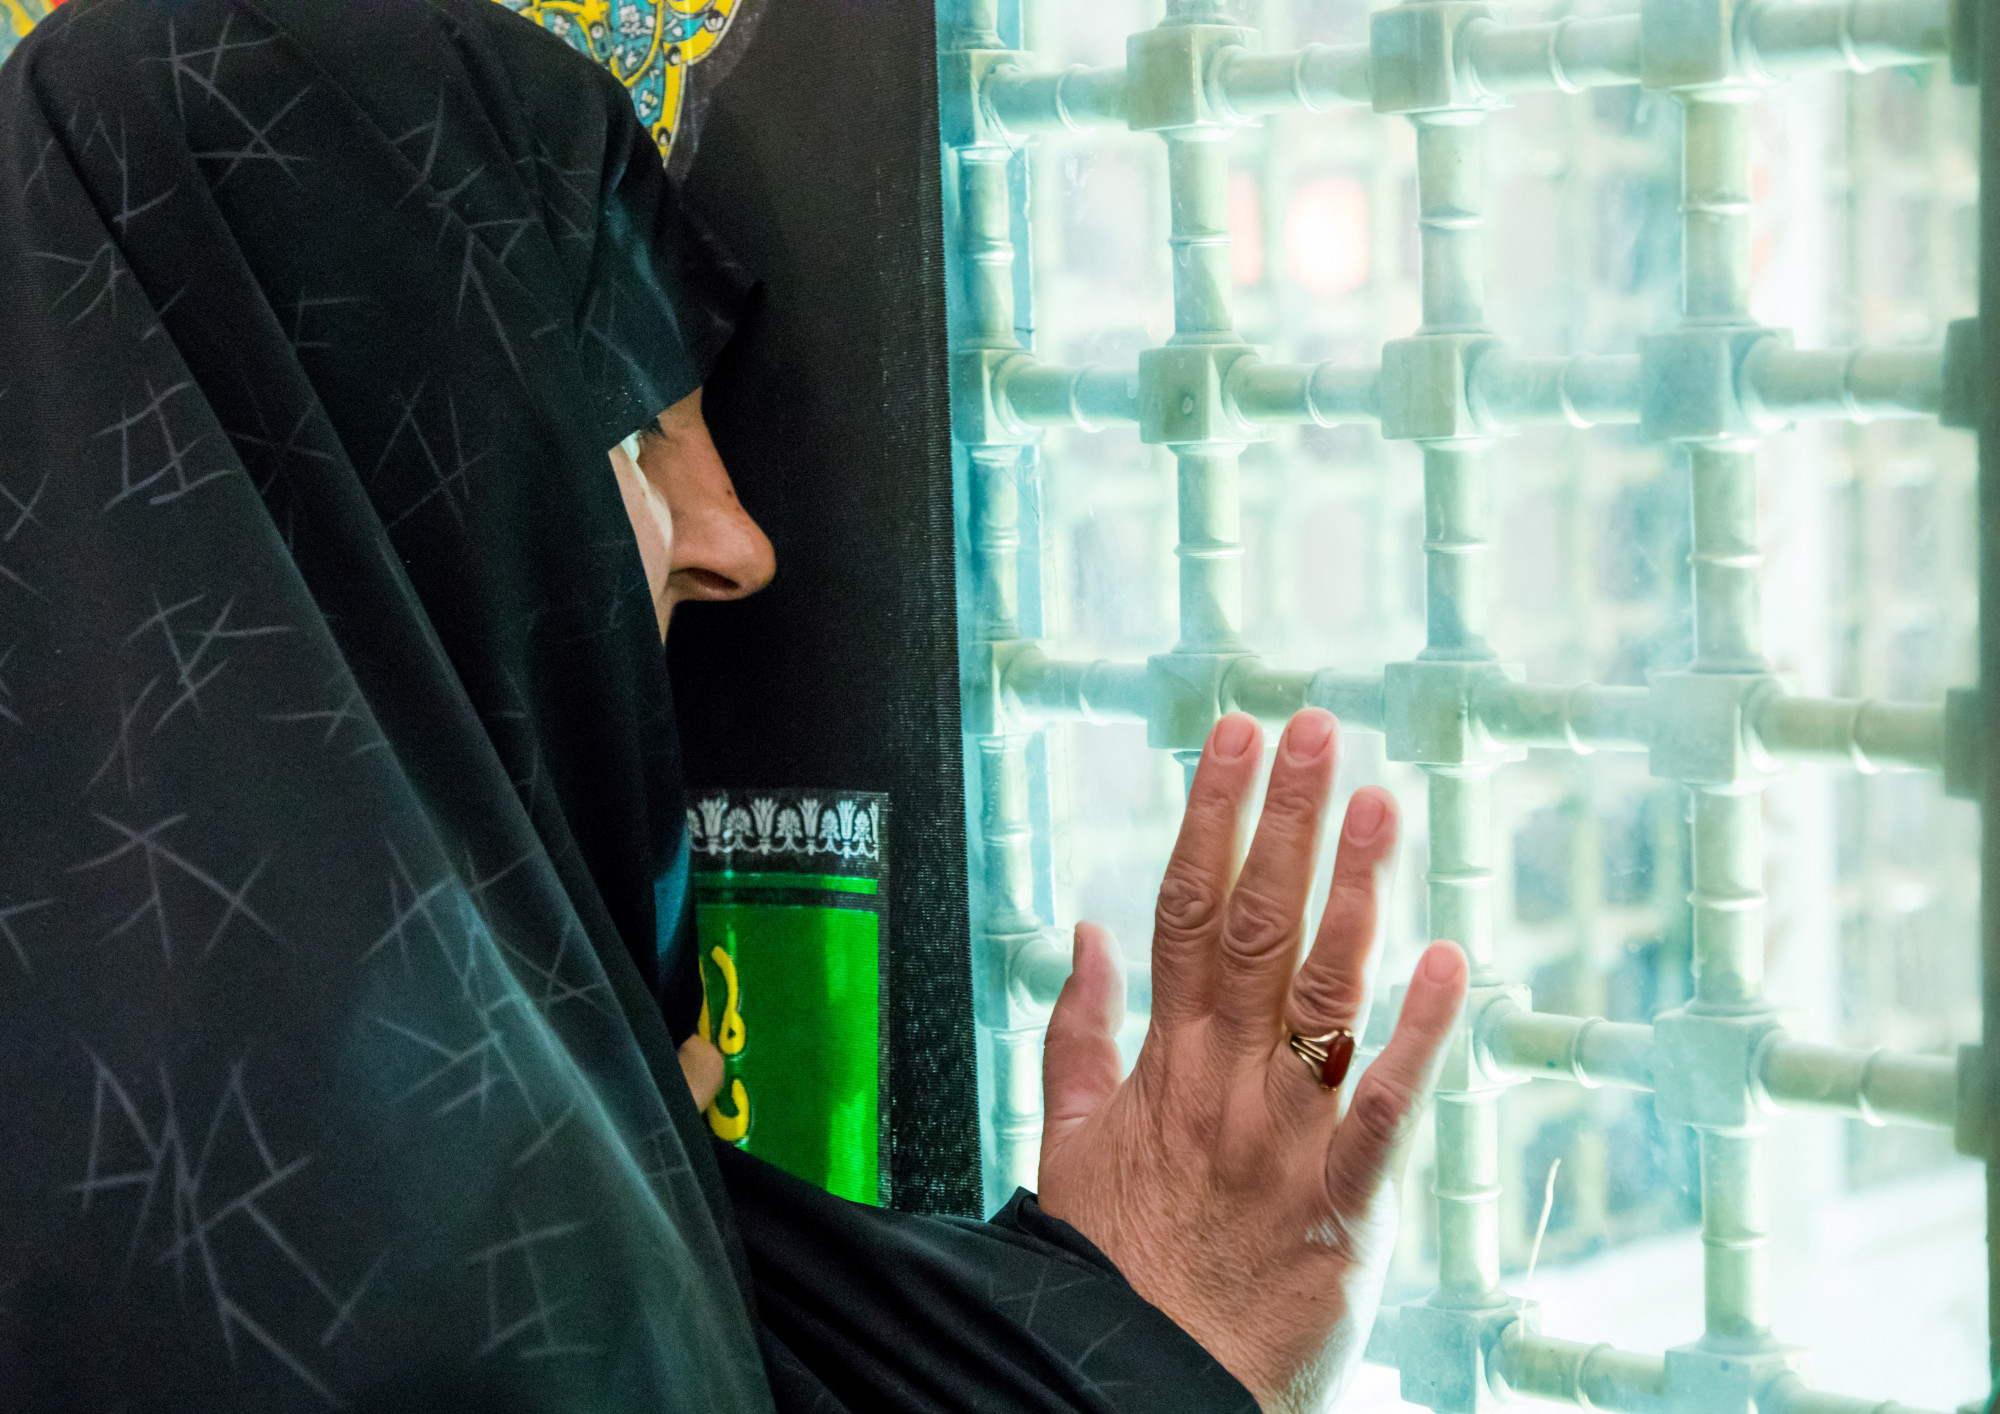 Betiltottak egy filmfesztivált Iránban, mert a plakátján egy hidzsábot nem viselő nő volt